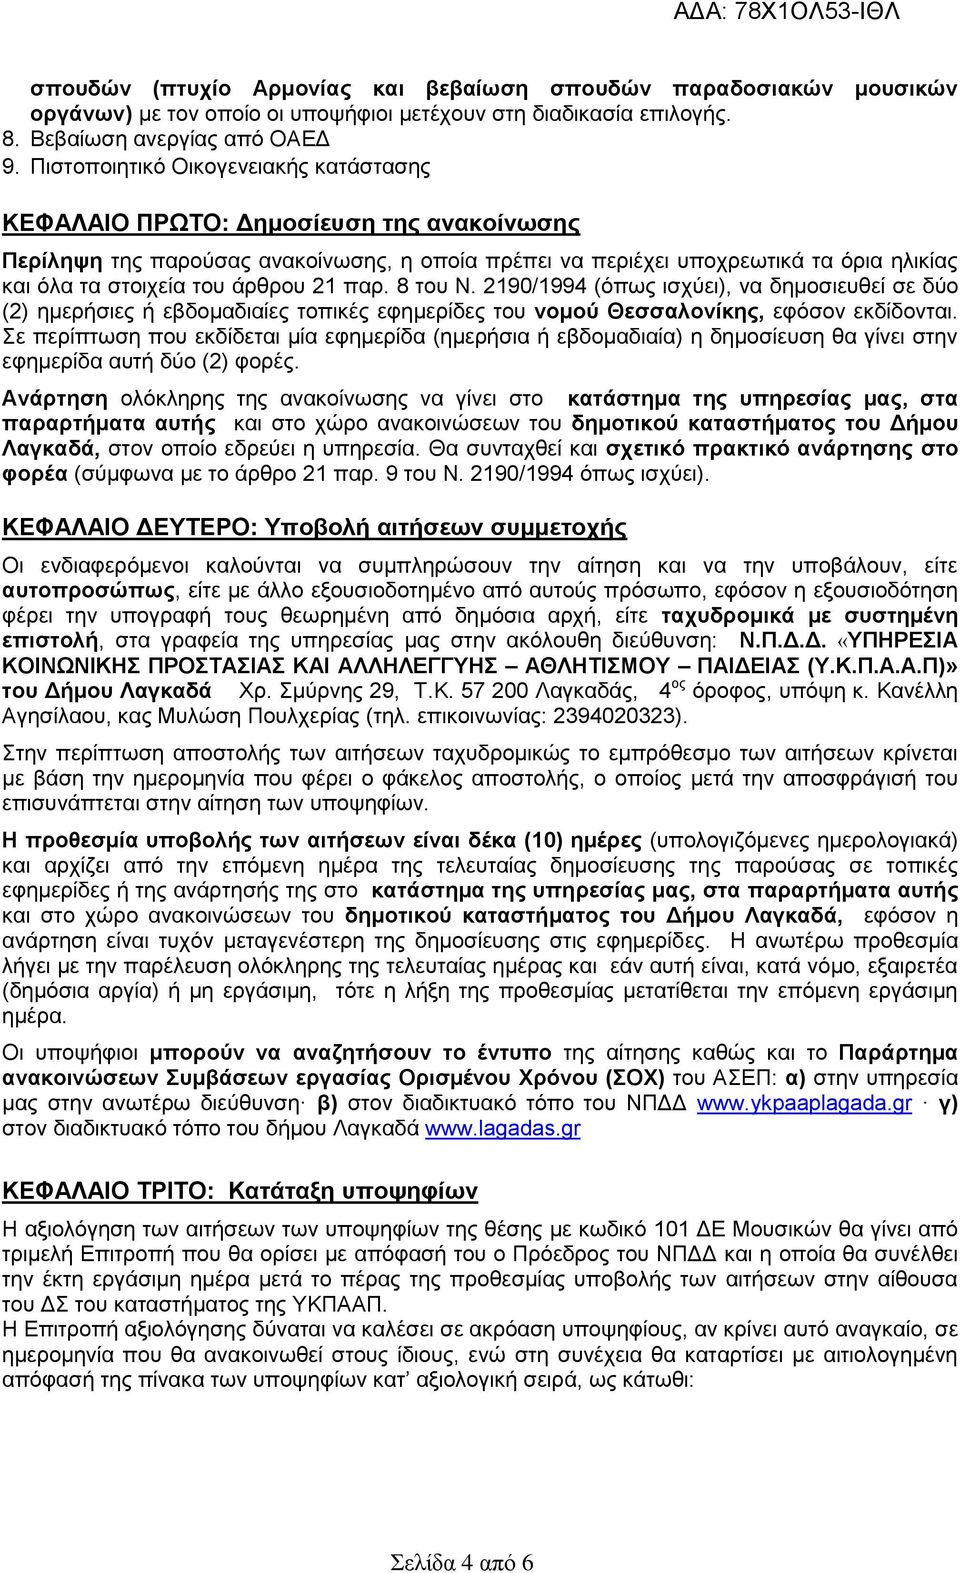 άρθρου 21 παρ. 8 του Ν. 2190/1994 (όπως ισχύει), να δημοσιευθεί σε δύο (2) ημερήσιες ή εβδομαδιαίες τοπικές εφημερίδες του νομού Θεσσαλονίκης, εφόσον εκδίδονται.